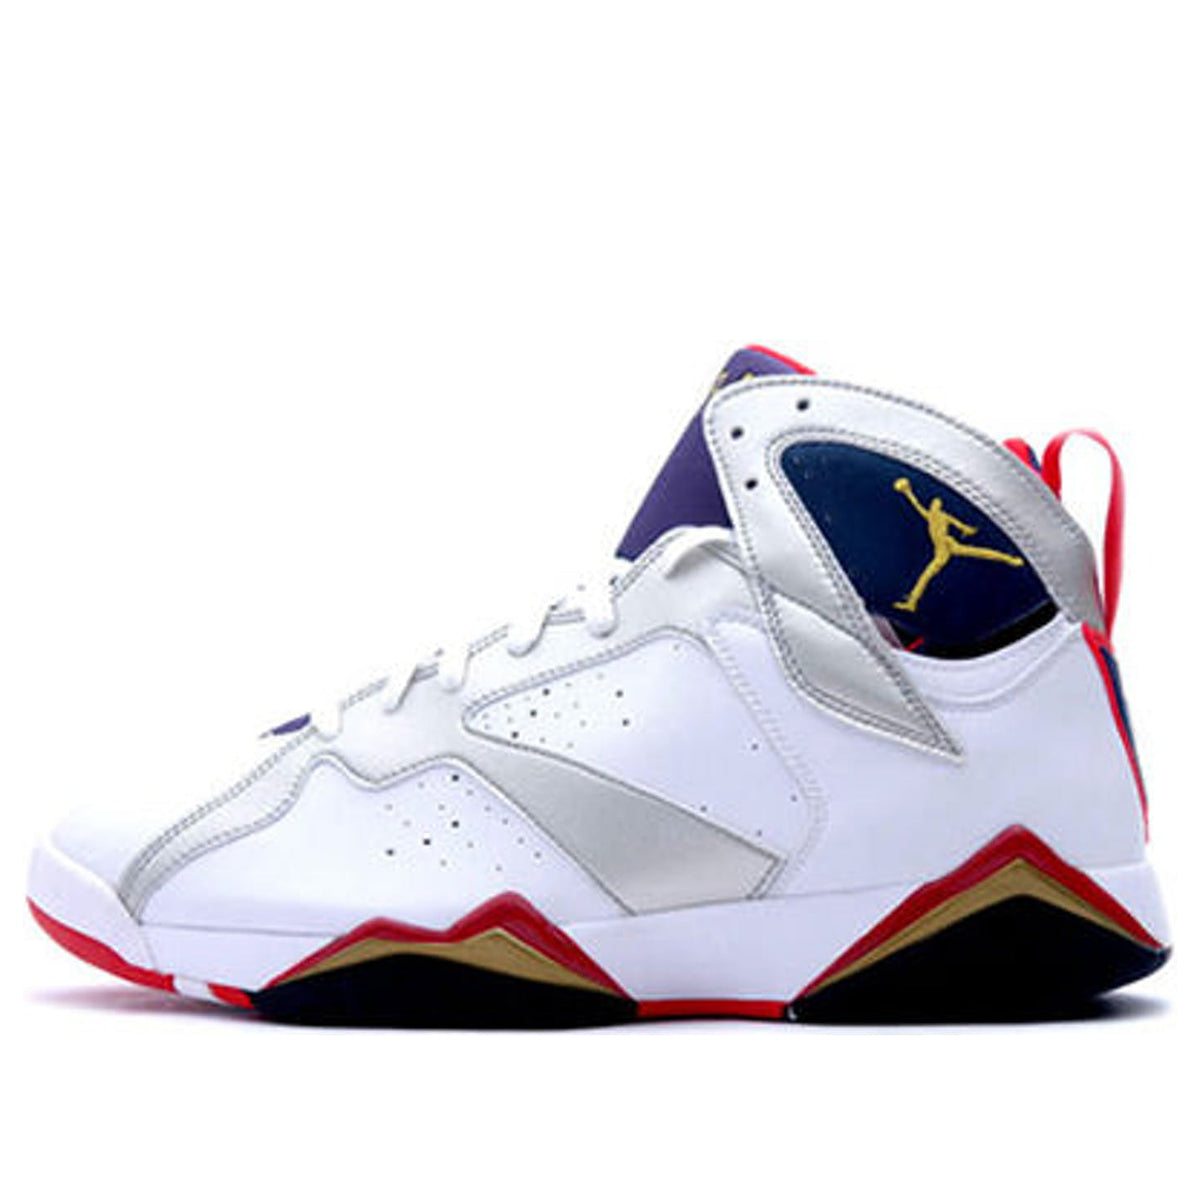 Air Jordan 7 Olympic (New Pics) - Sneaker Freaker